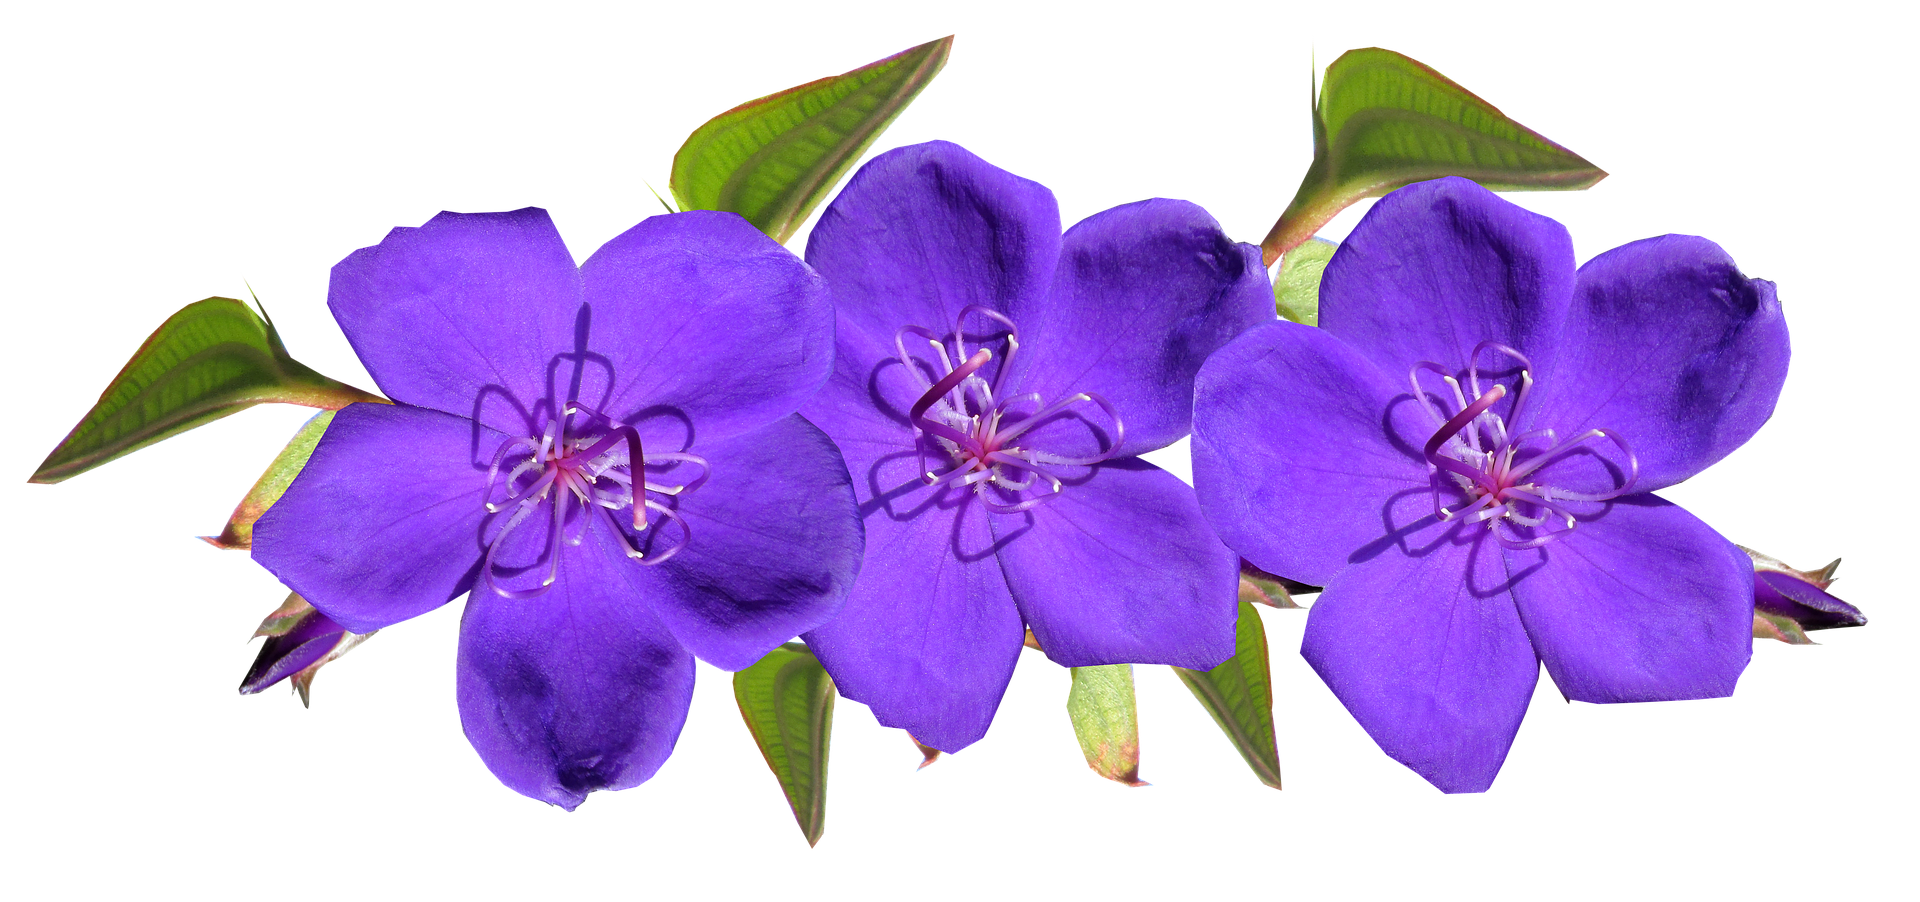 春 に 咲く 紫色 の 花詳細 3位